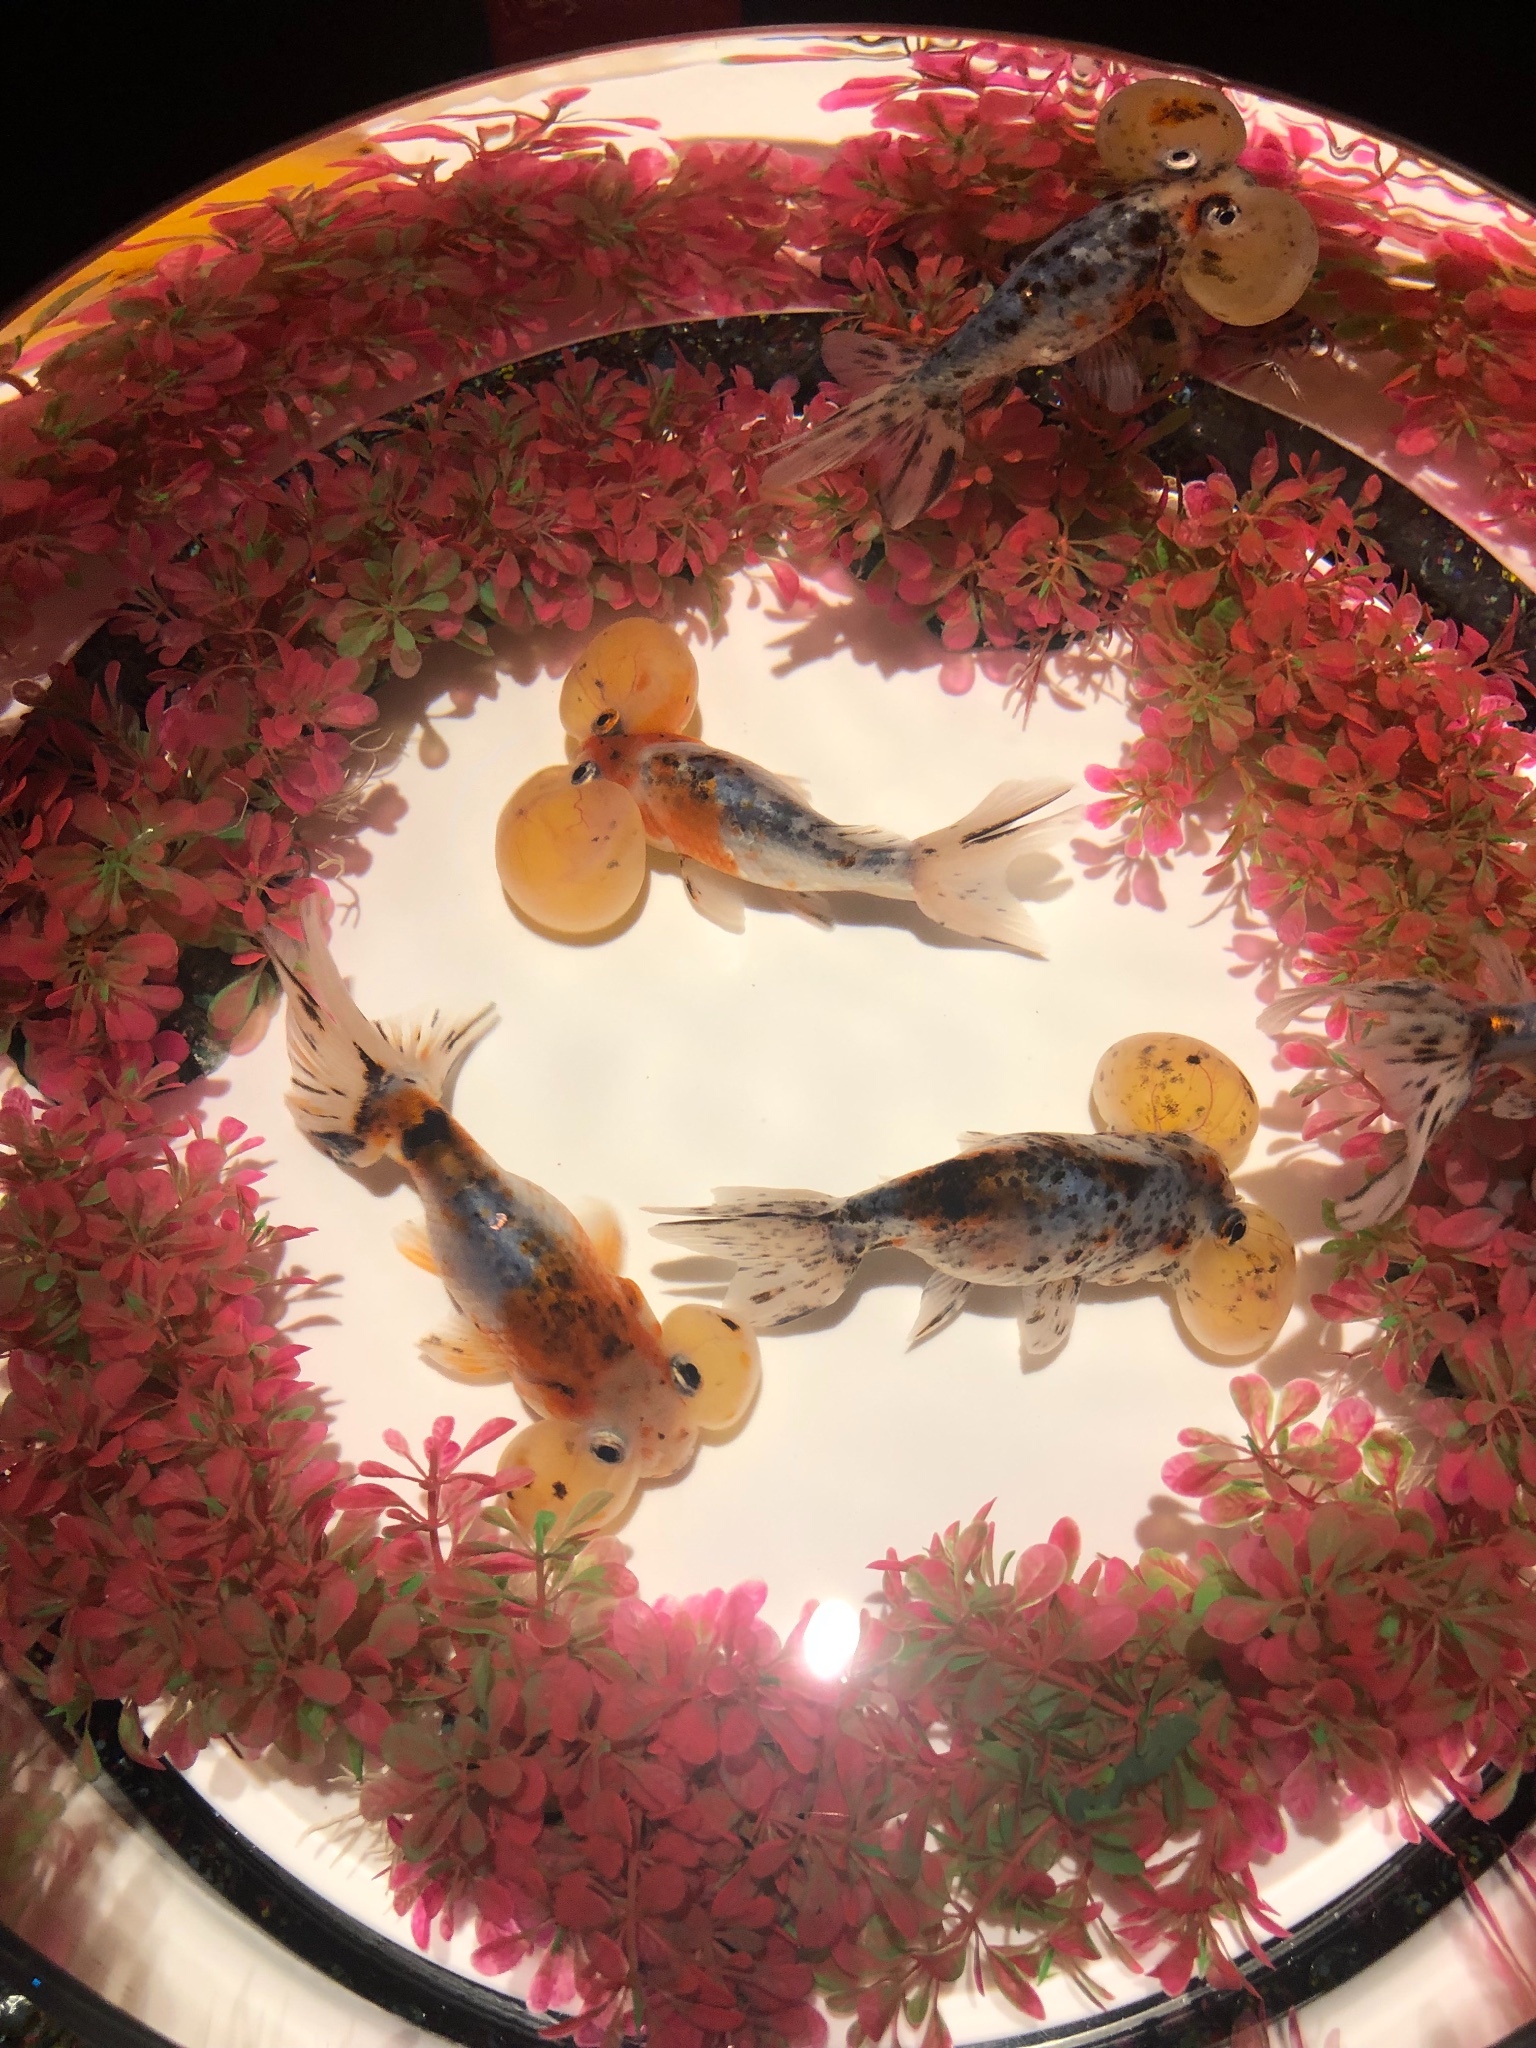 日本殿堂級金魚藝術展 讓金魚也可以風情萬種 Go Travel